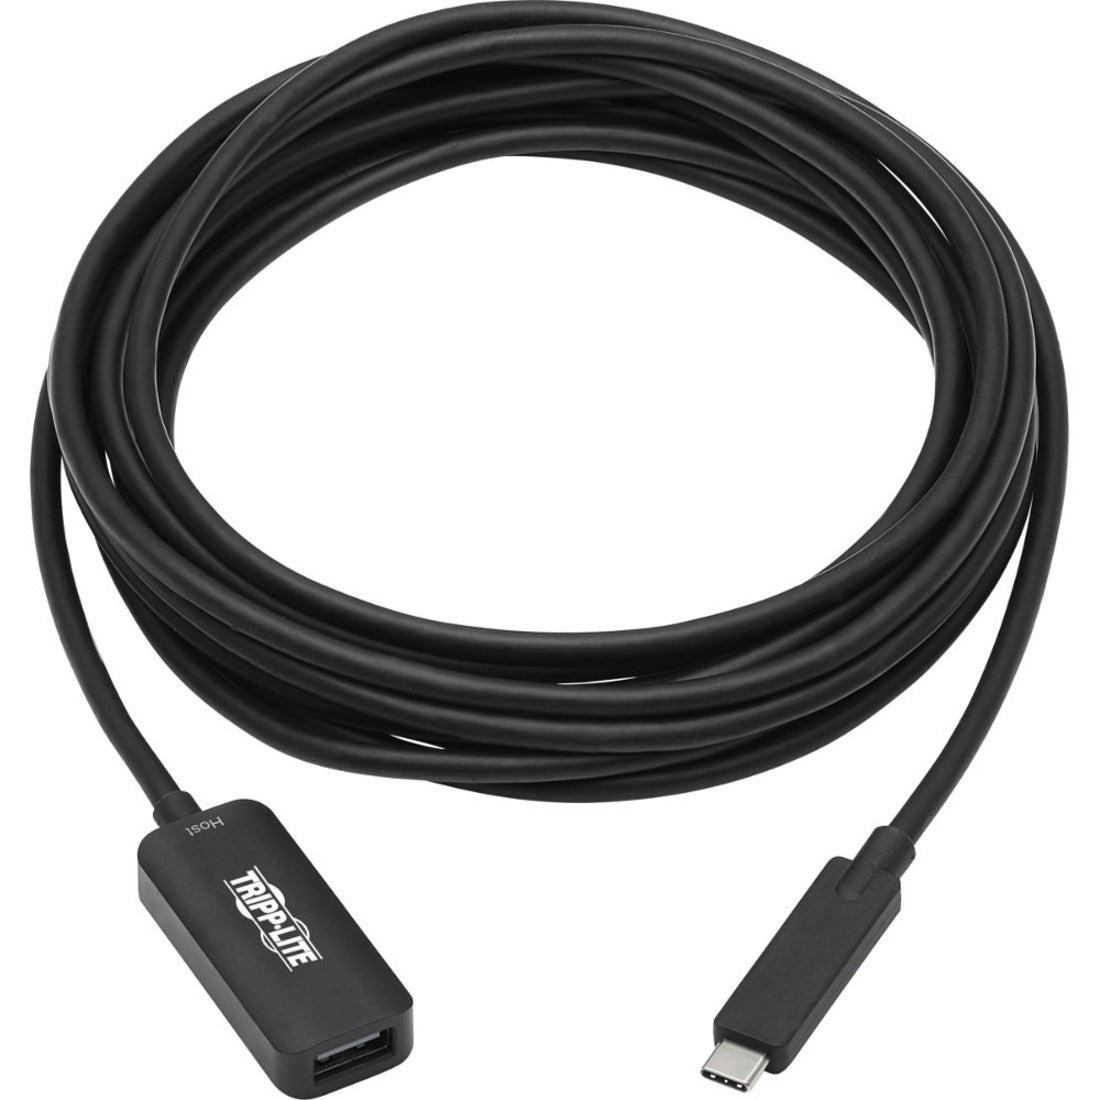 Cable de Transferencia de Datos USB/USB-C Tripp Lite U330-05M-C2A-G2 5 metros Conectar y Usar Activo 10 Gbit/s.